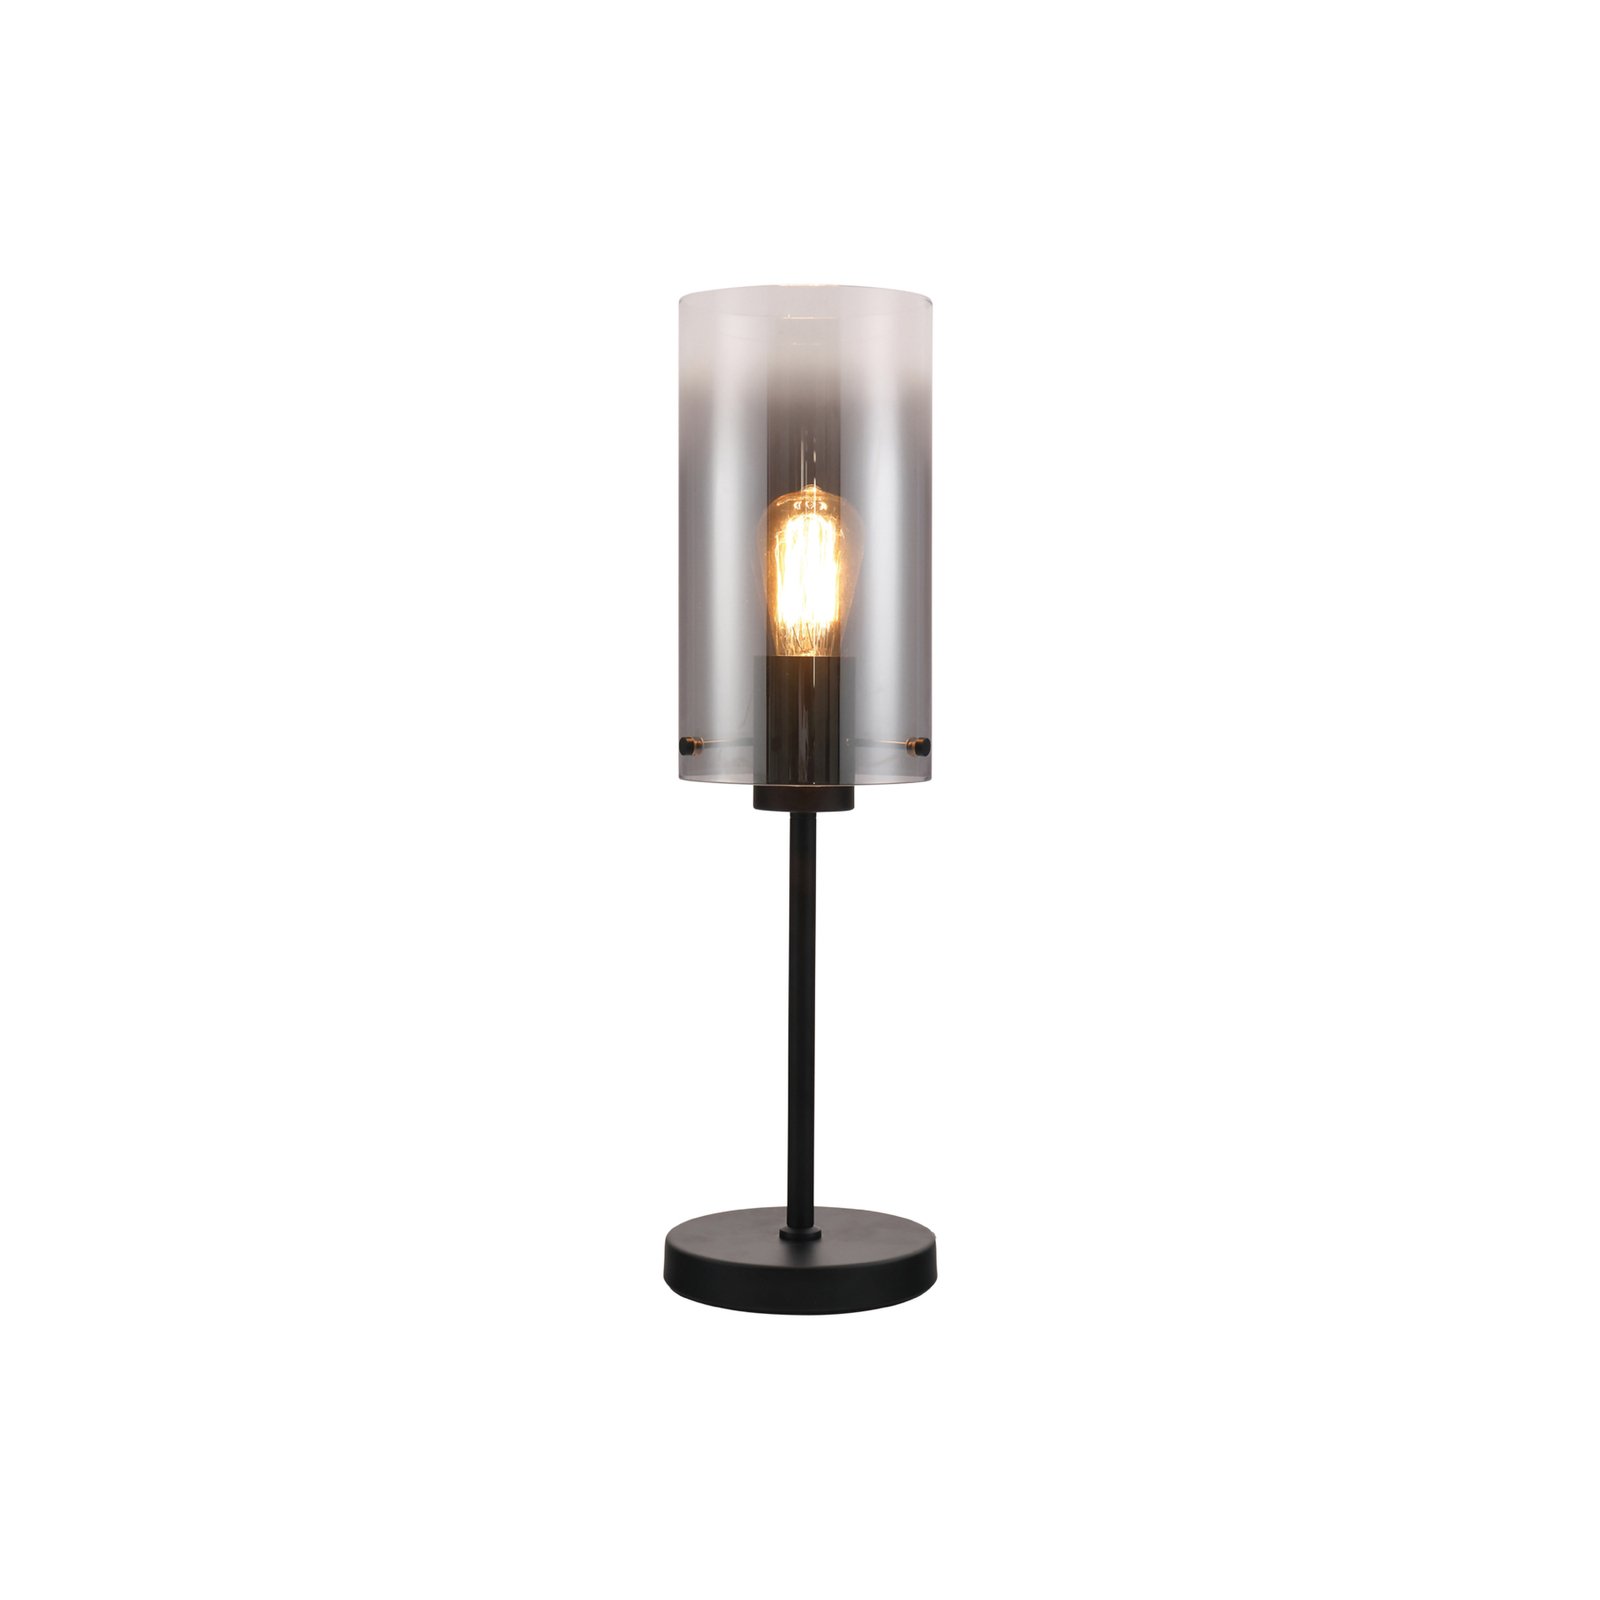 Lampa stołowa Ventotto, czarny/dymny, wysokość 57 cm, metal/szkło